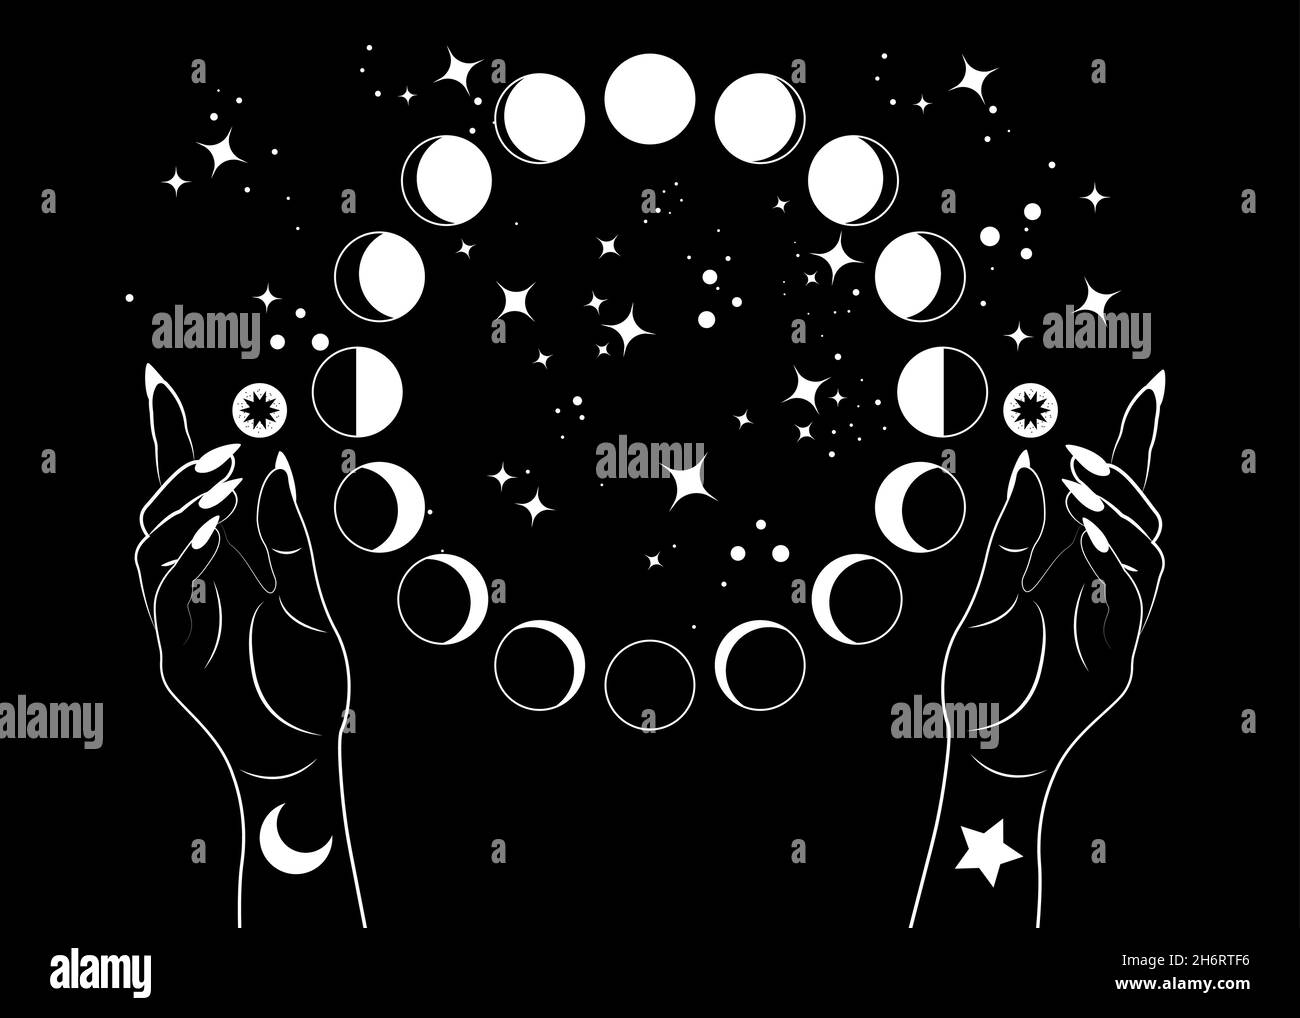 Mystische Mondphasen und Frauenhände, Dreimondheide Wiccan Göttin Symbol, Alchemie esoterischer Zauberraum, heiliges Rad Mondzyklus, Vektor isoliert Stock Vektor